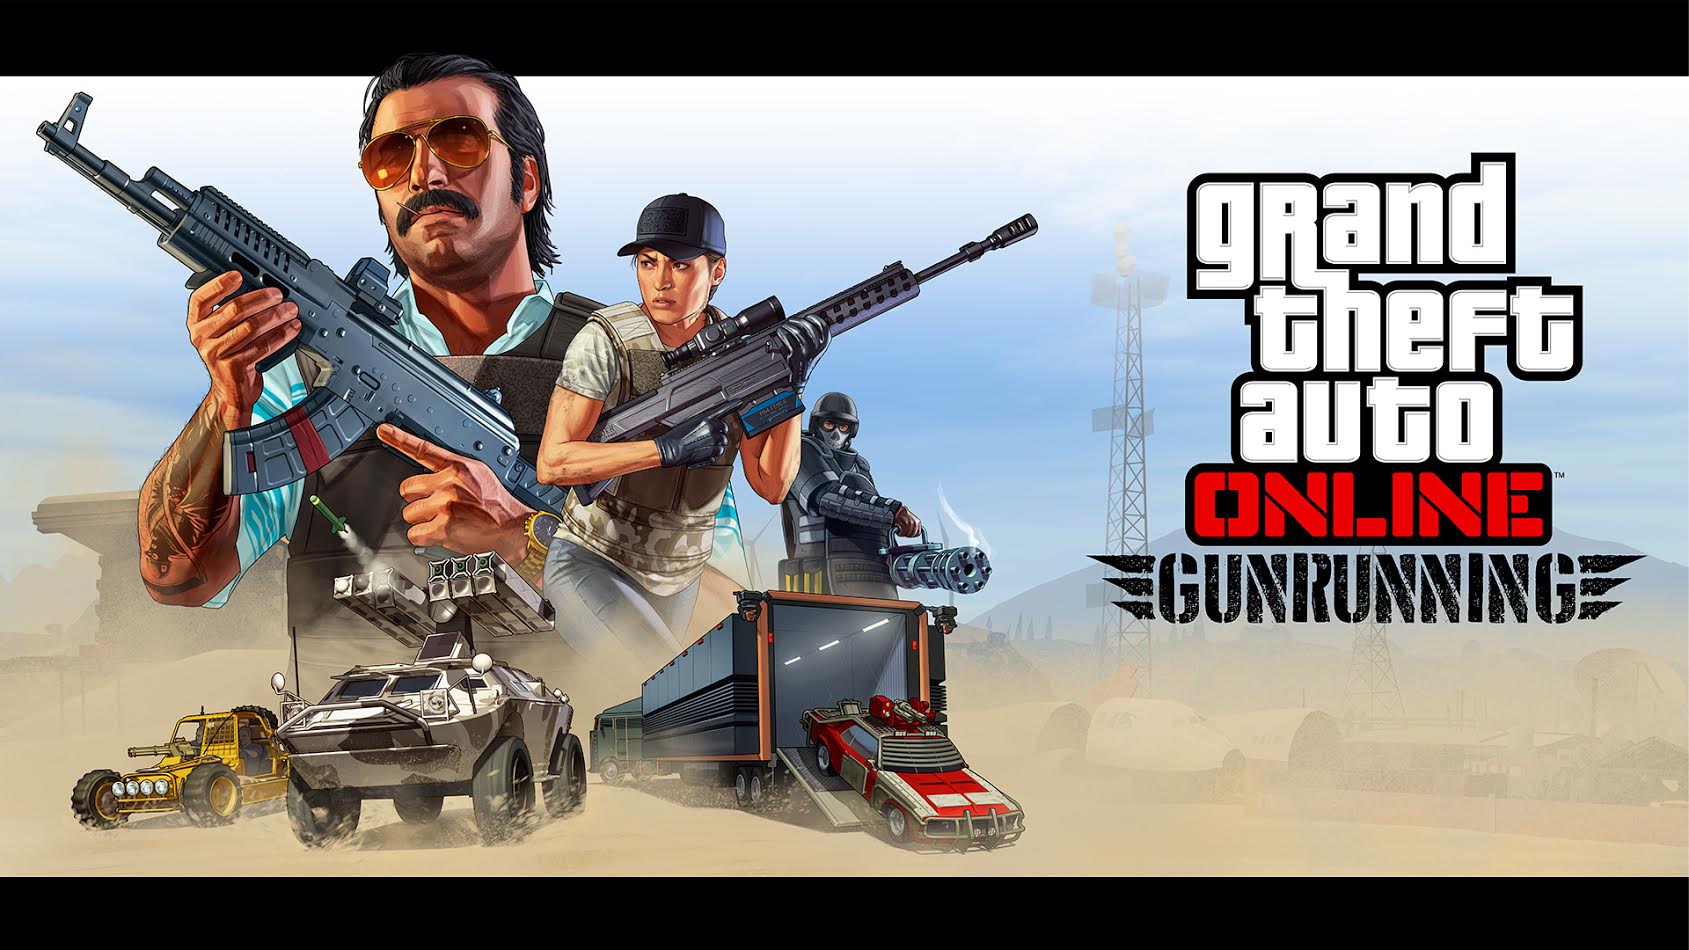 Date Sortie Trafic D armes Gta 6 GTA 5 : trailer de lancement du contenu Trafic d'armes pour GTA Online |  Xbox One - Xboxygen